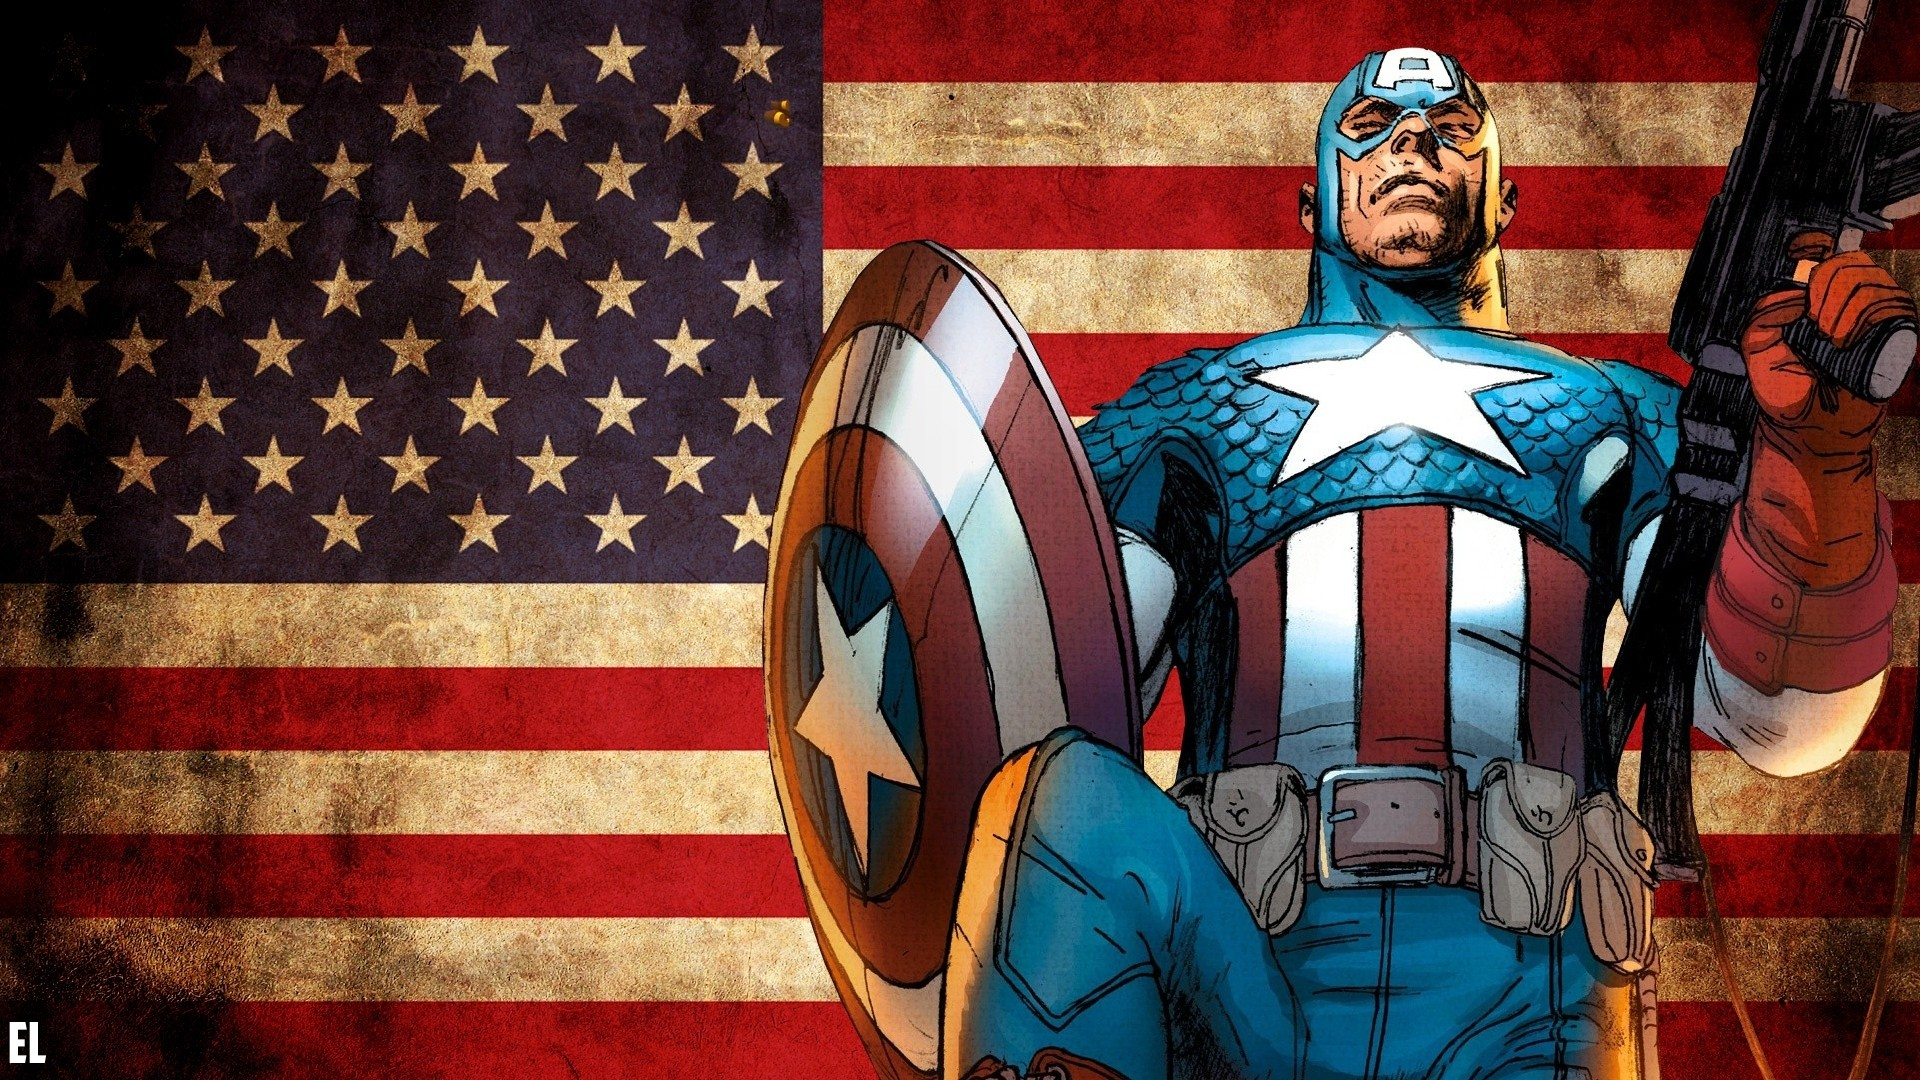 General 1920x1080 Captain America comics comic art superhero flag American flag shield weapon machine gun hero patriotic